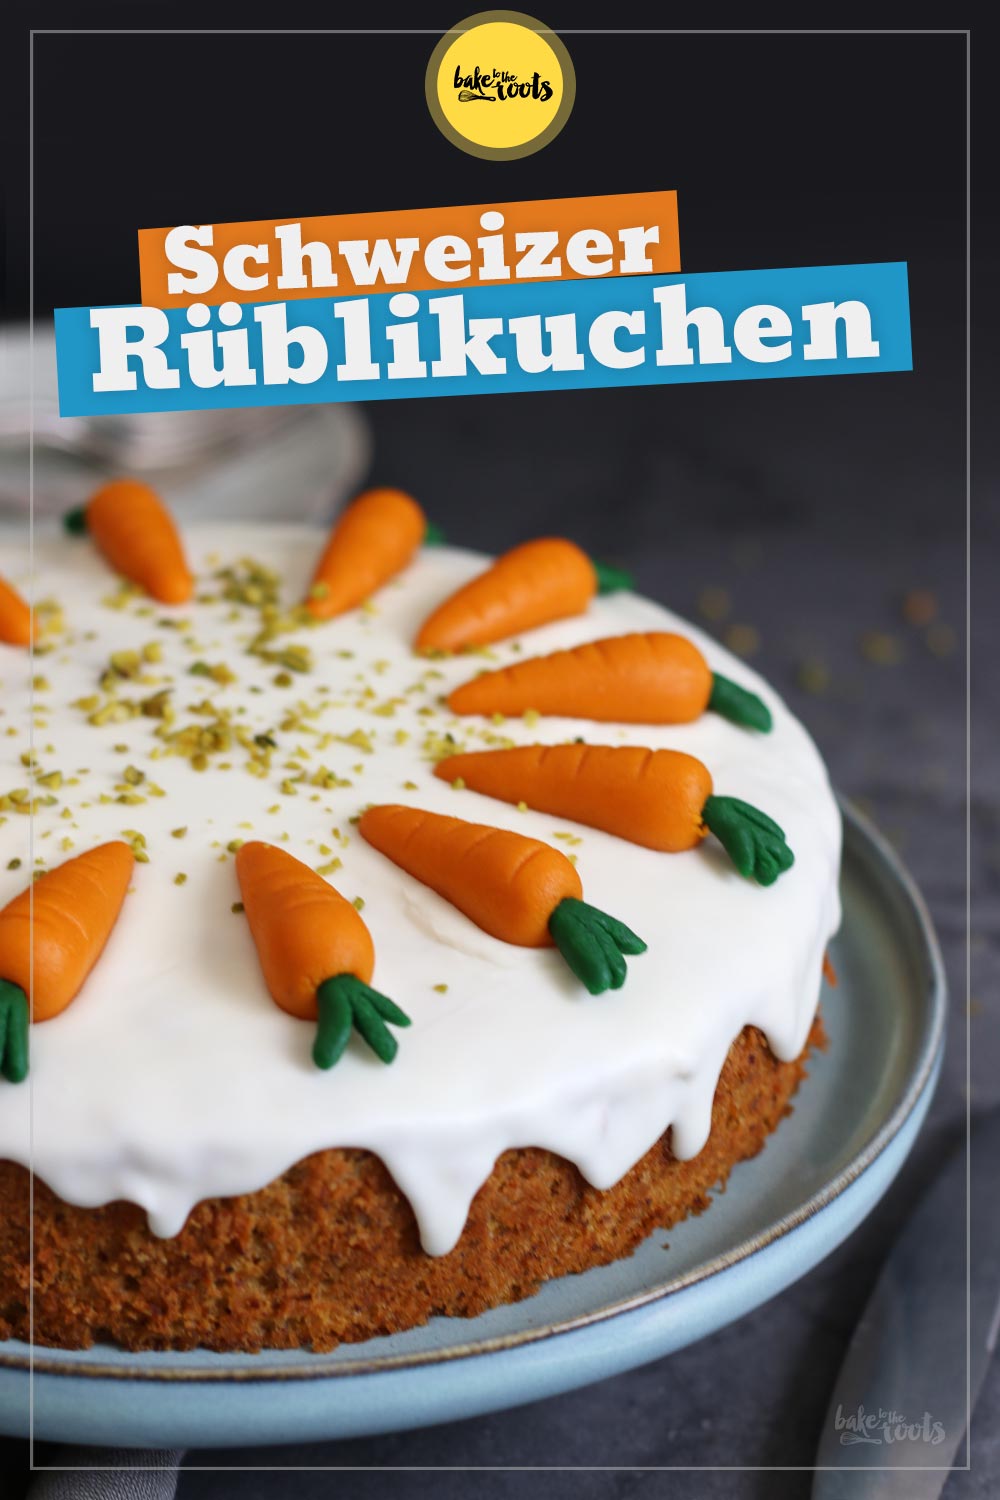 Schweizer Rüblikuchen | Bake to the roots